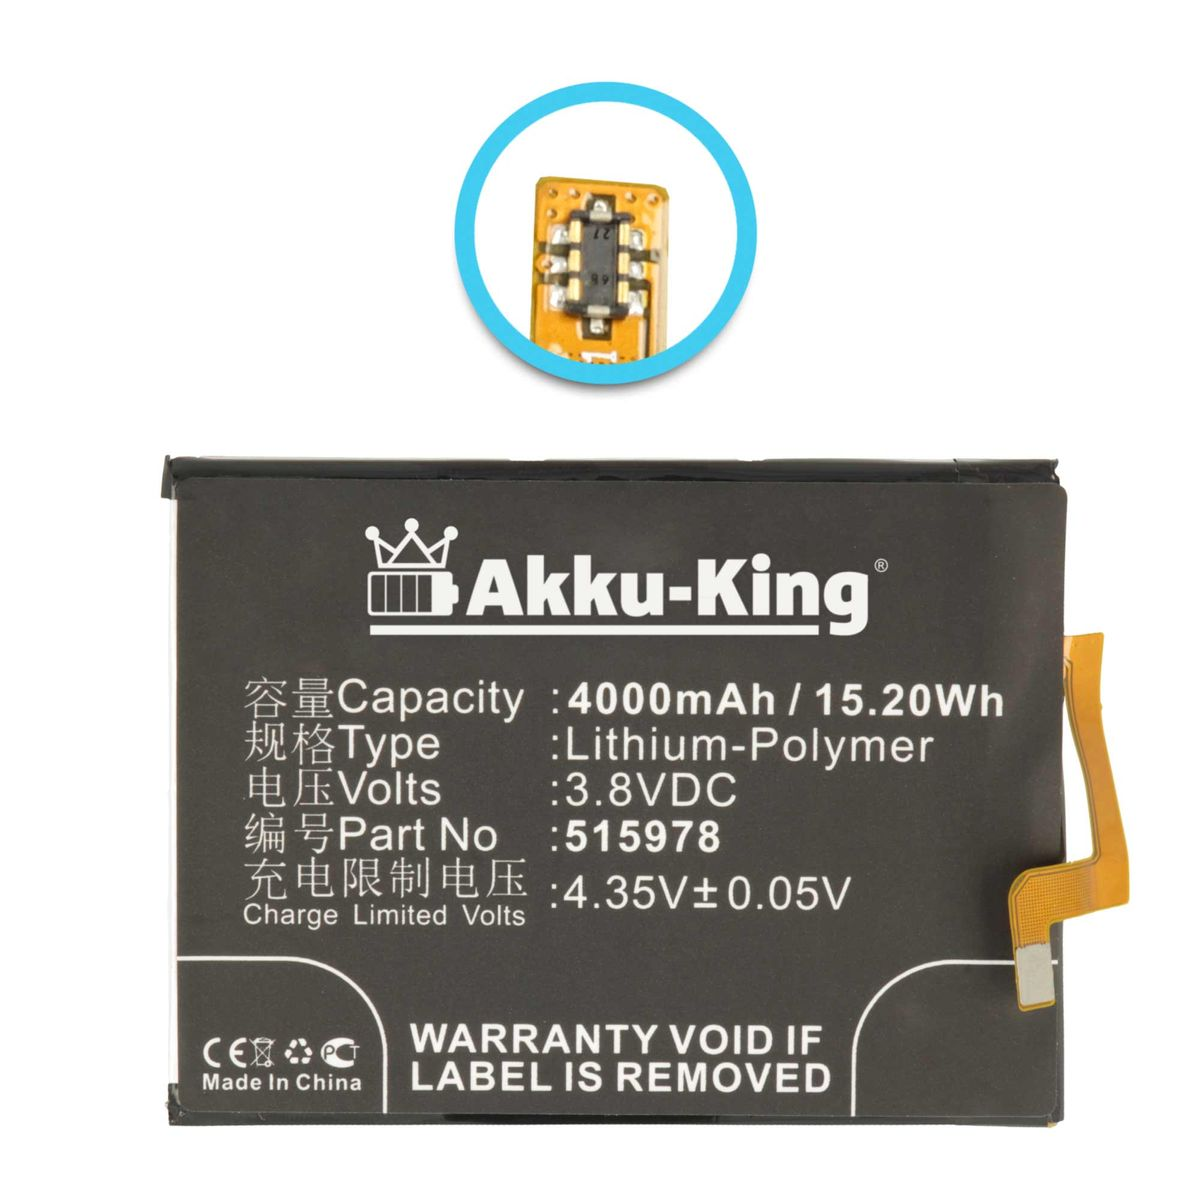 AKKU-KING Akku kompatibel mit ZTE 4000mAh 3.8 Handy-Akku, 515978 Volt, Li-Polymer